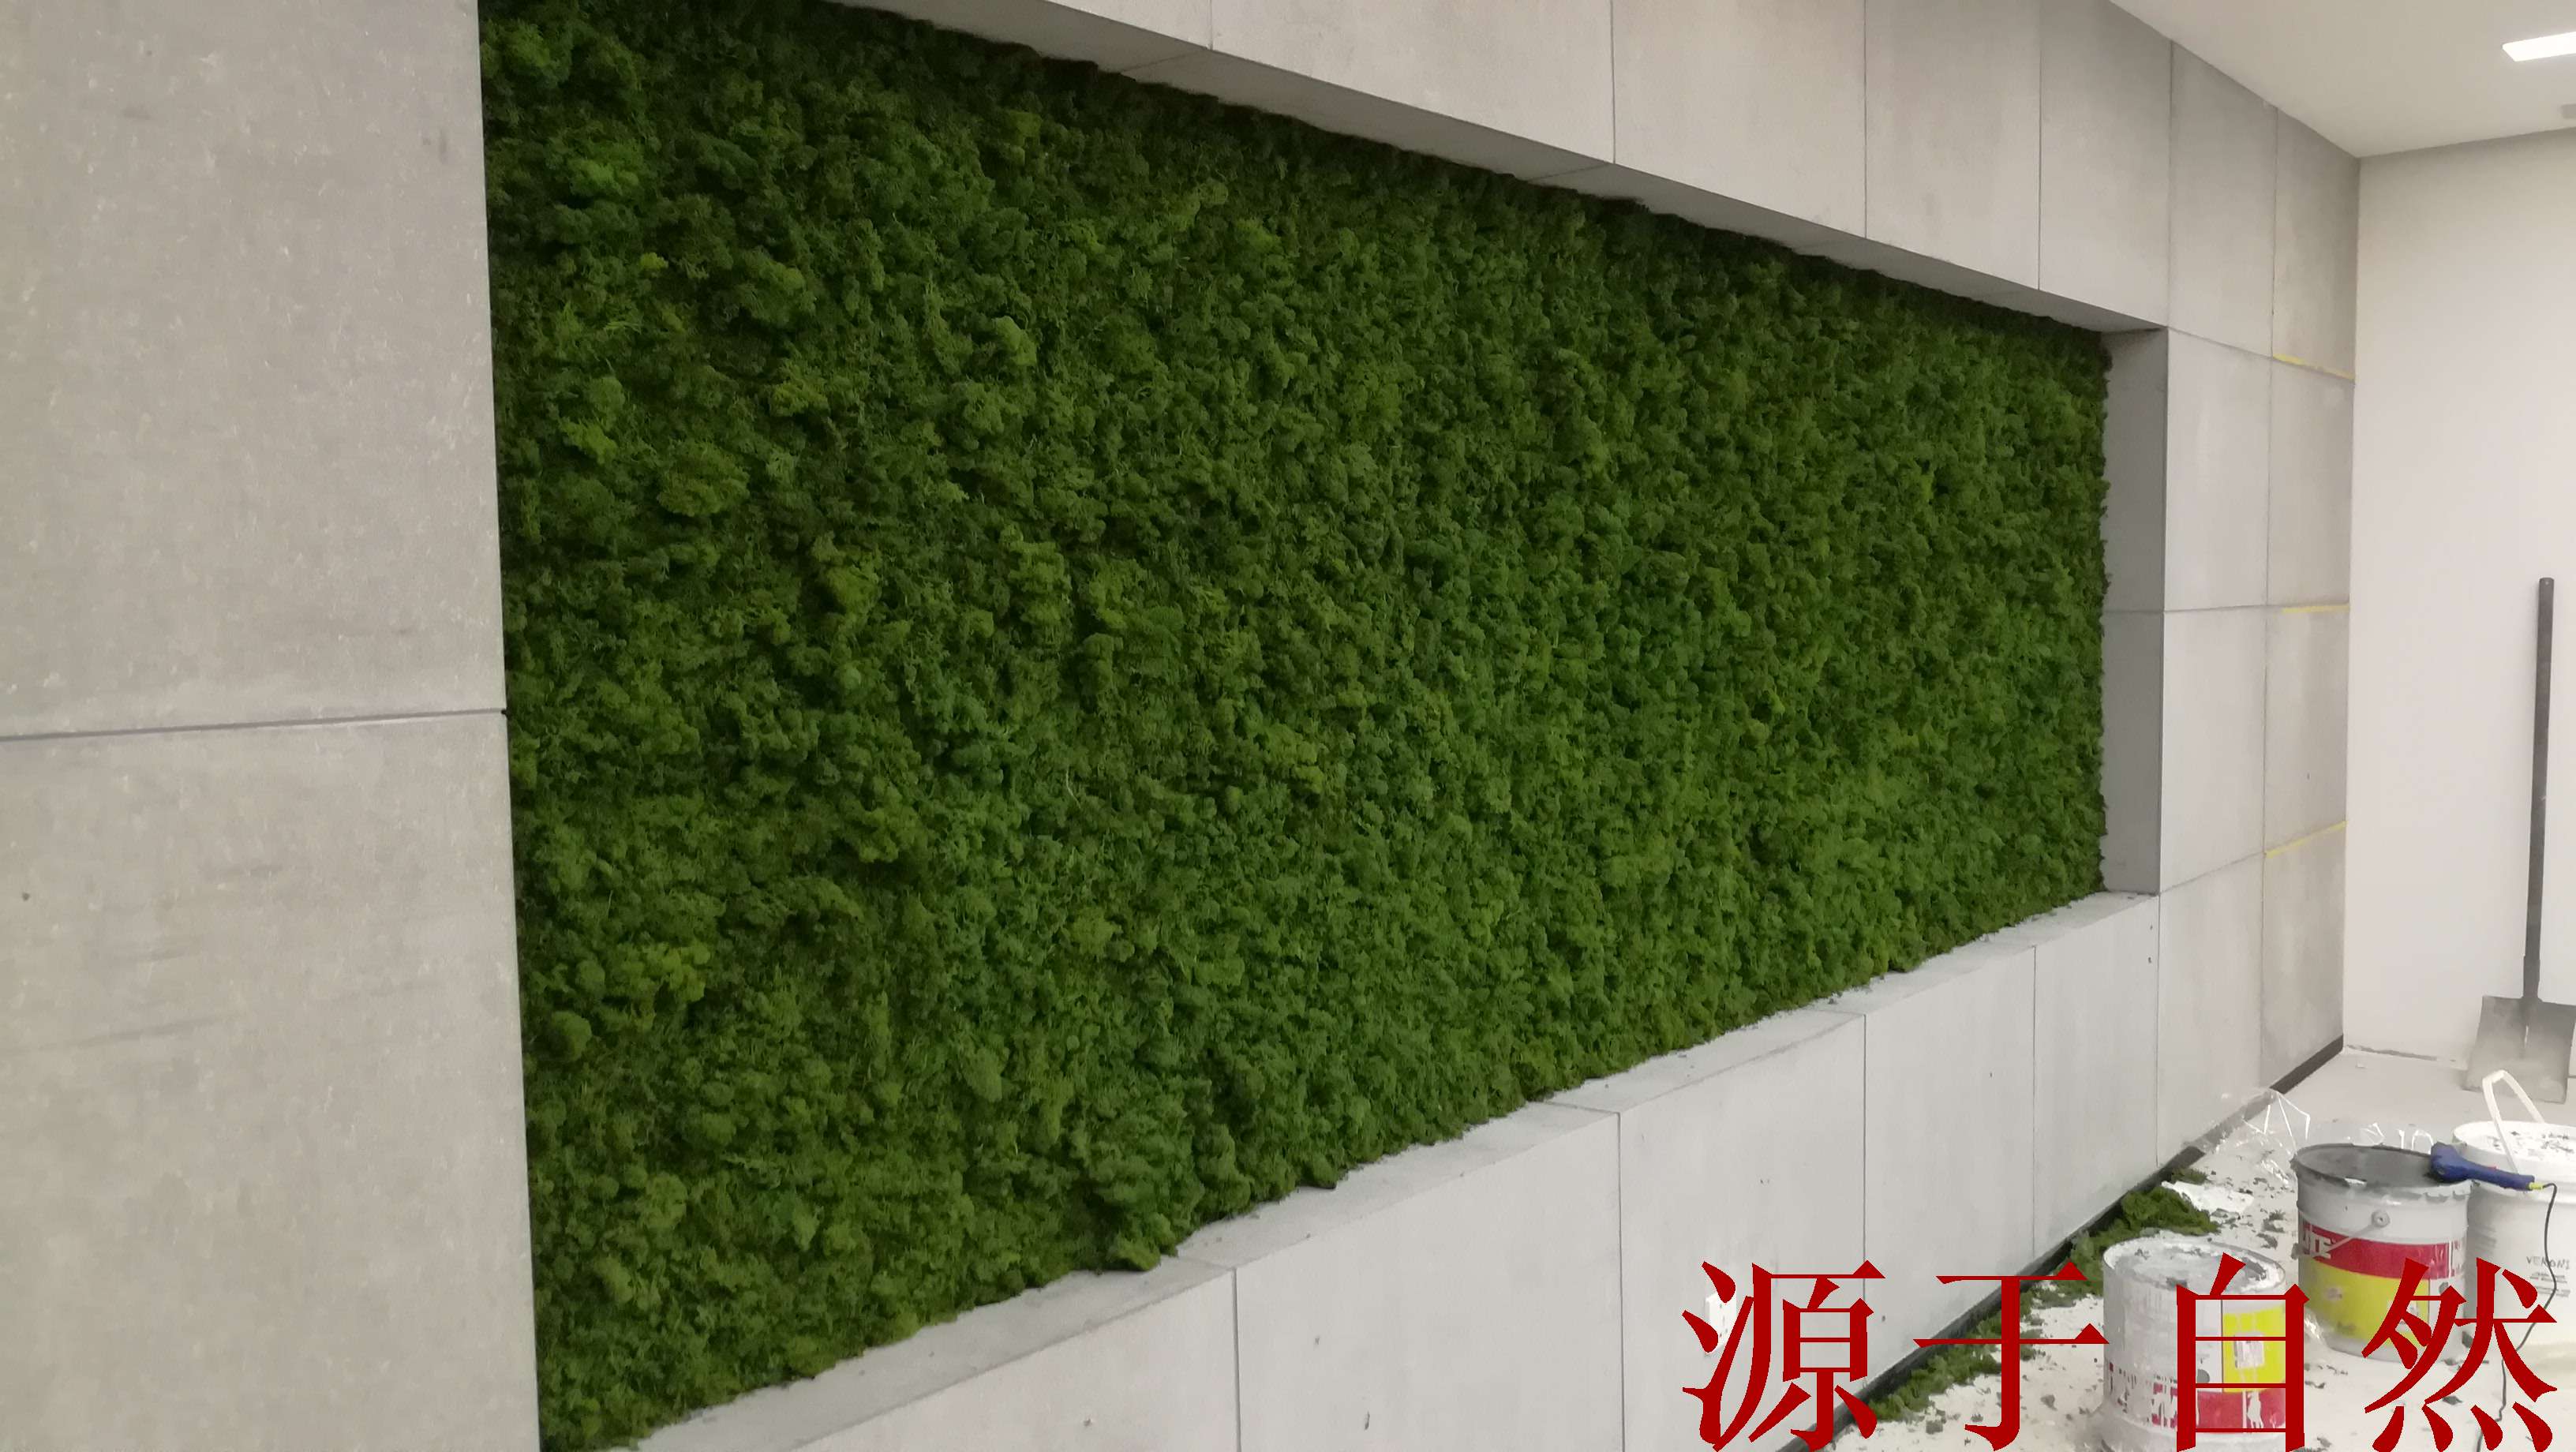 河南青藤园艺-立体绿化解决方案-室内外植物墙-屋顶绿化-仿真花艺